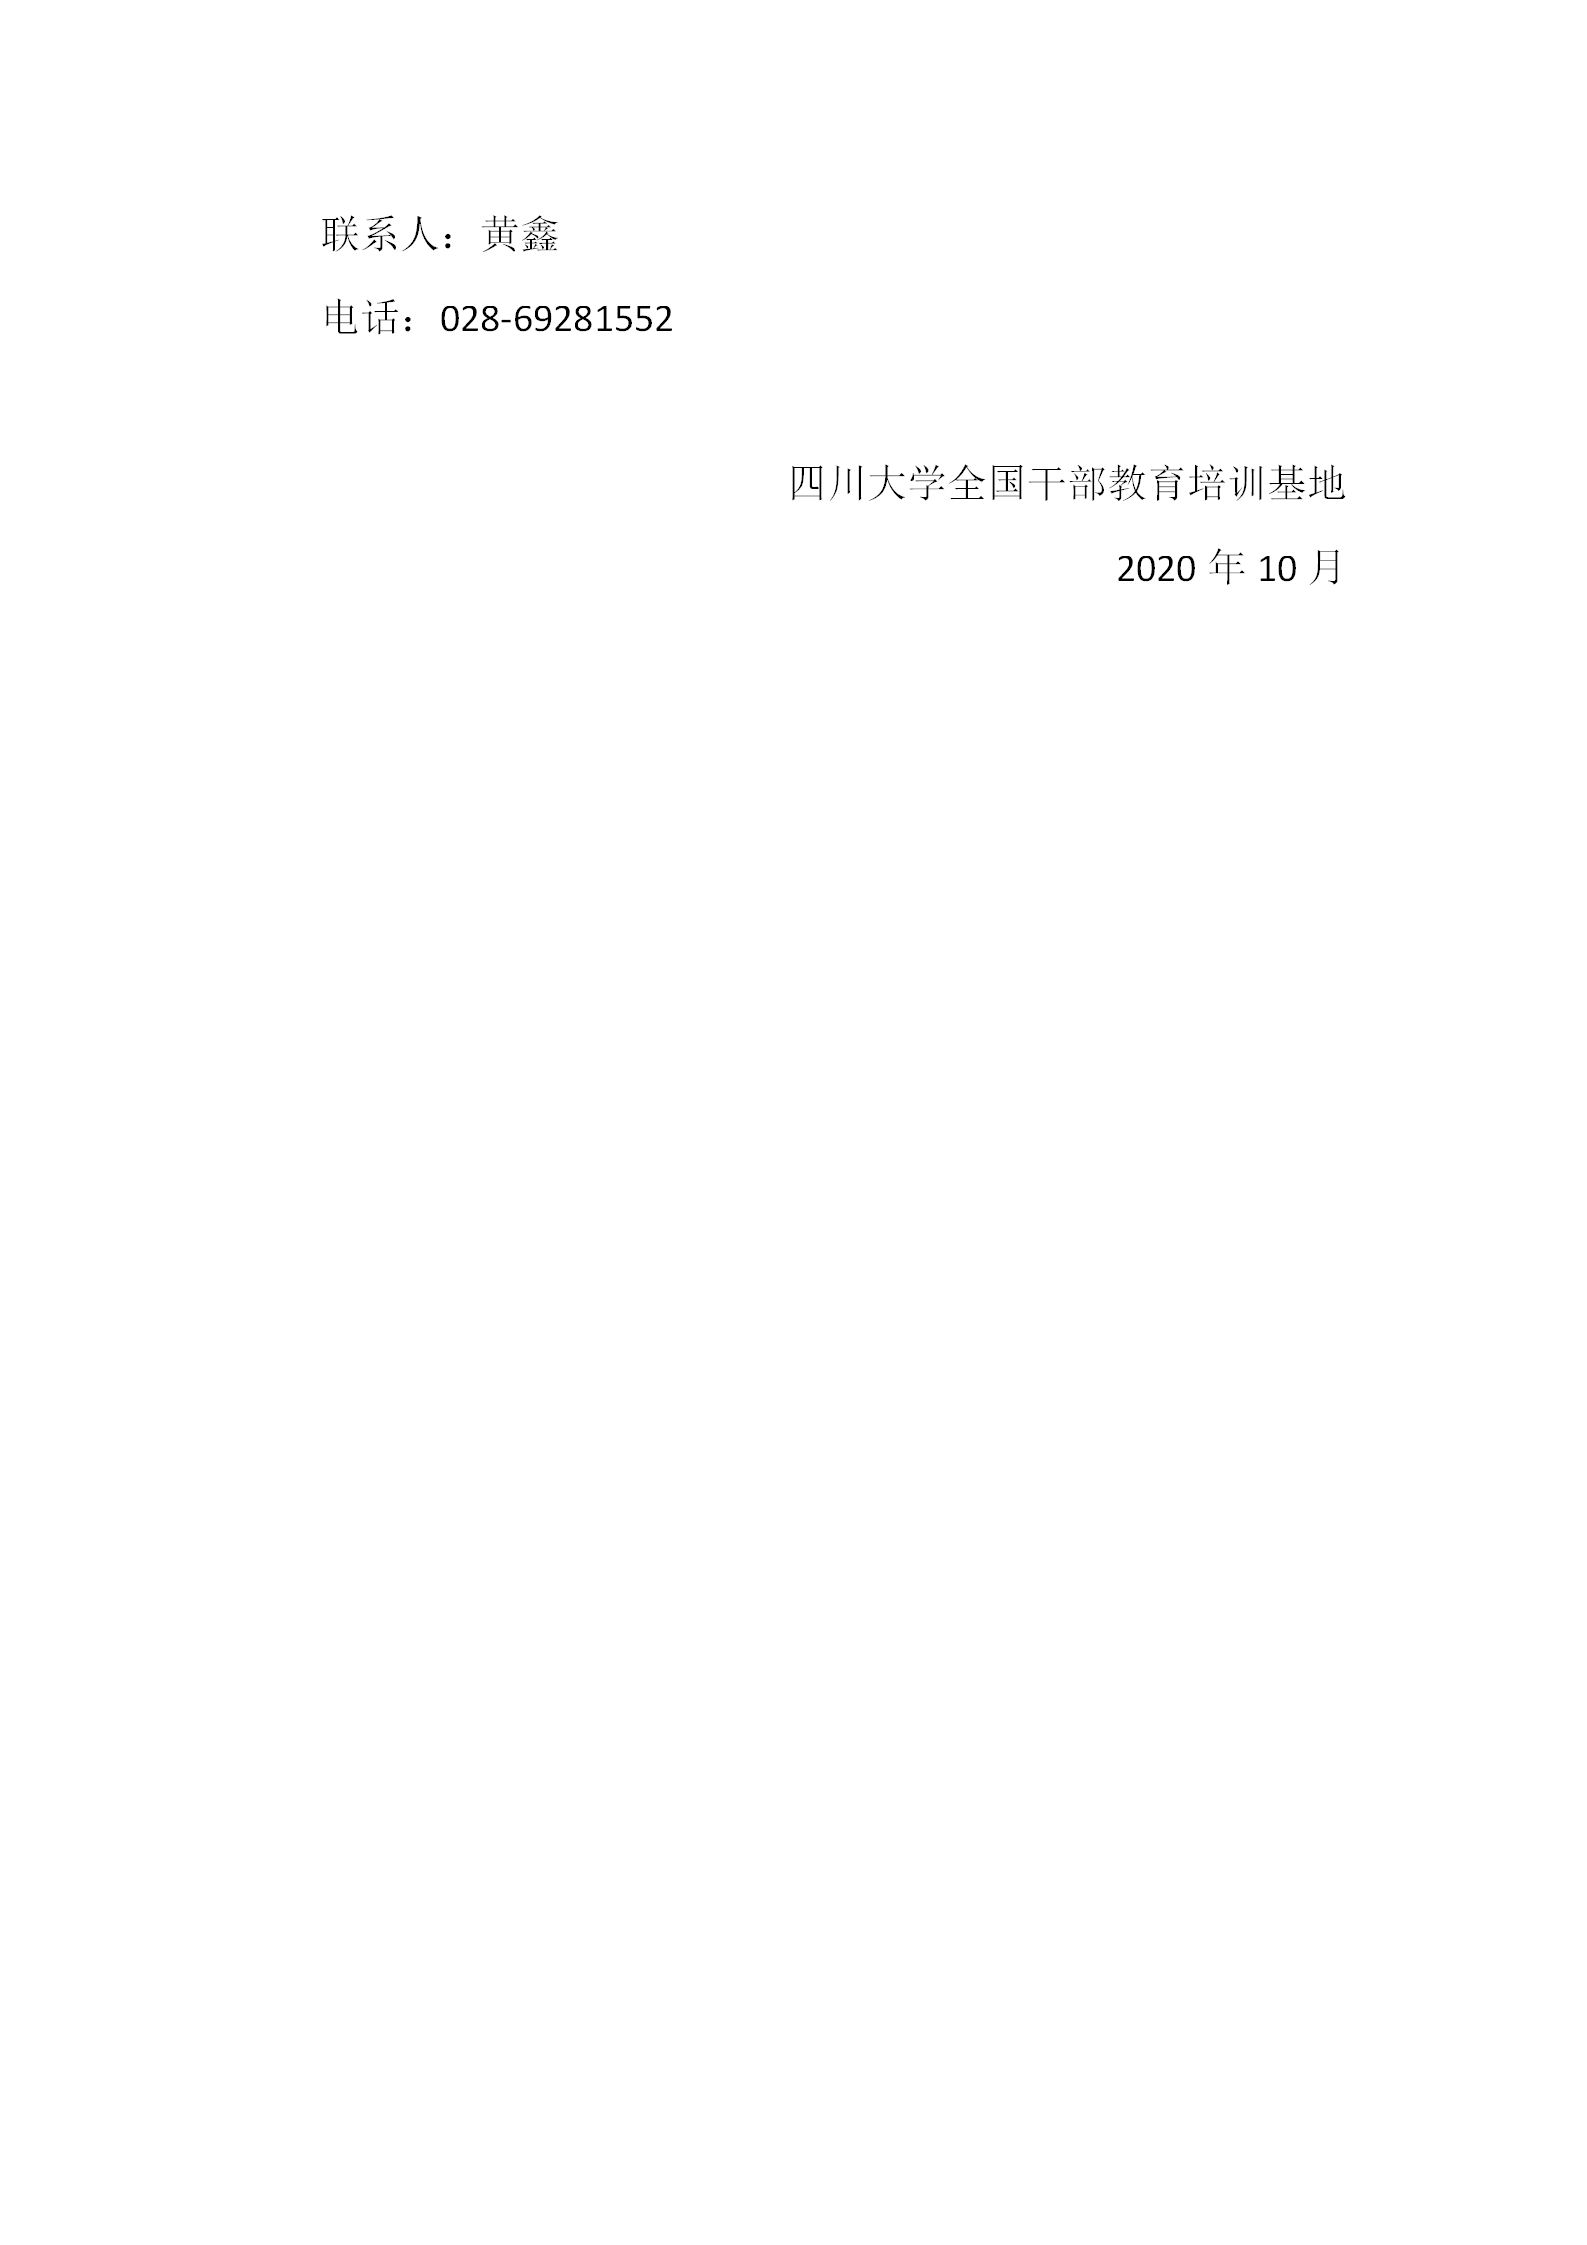 2.新时代干部教育培训高质量发展研究（2020）征文启事_03.png